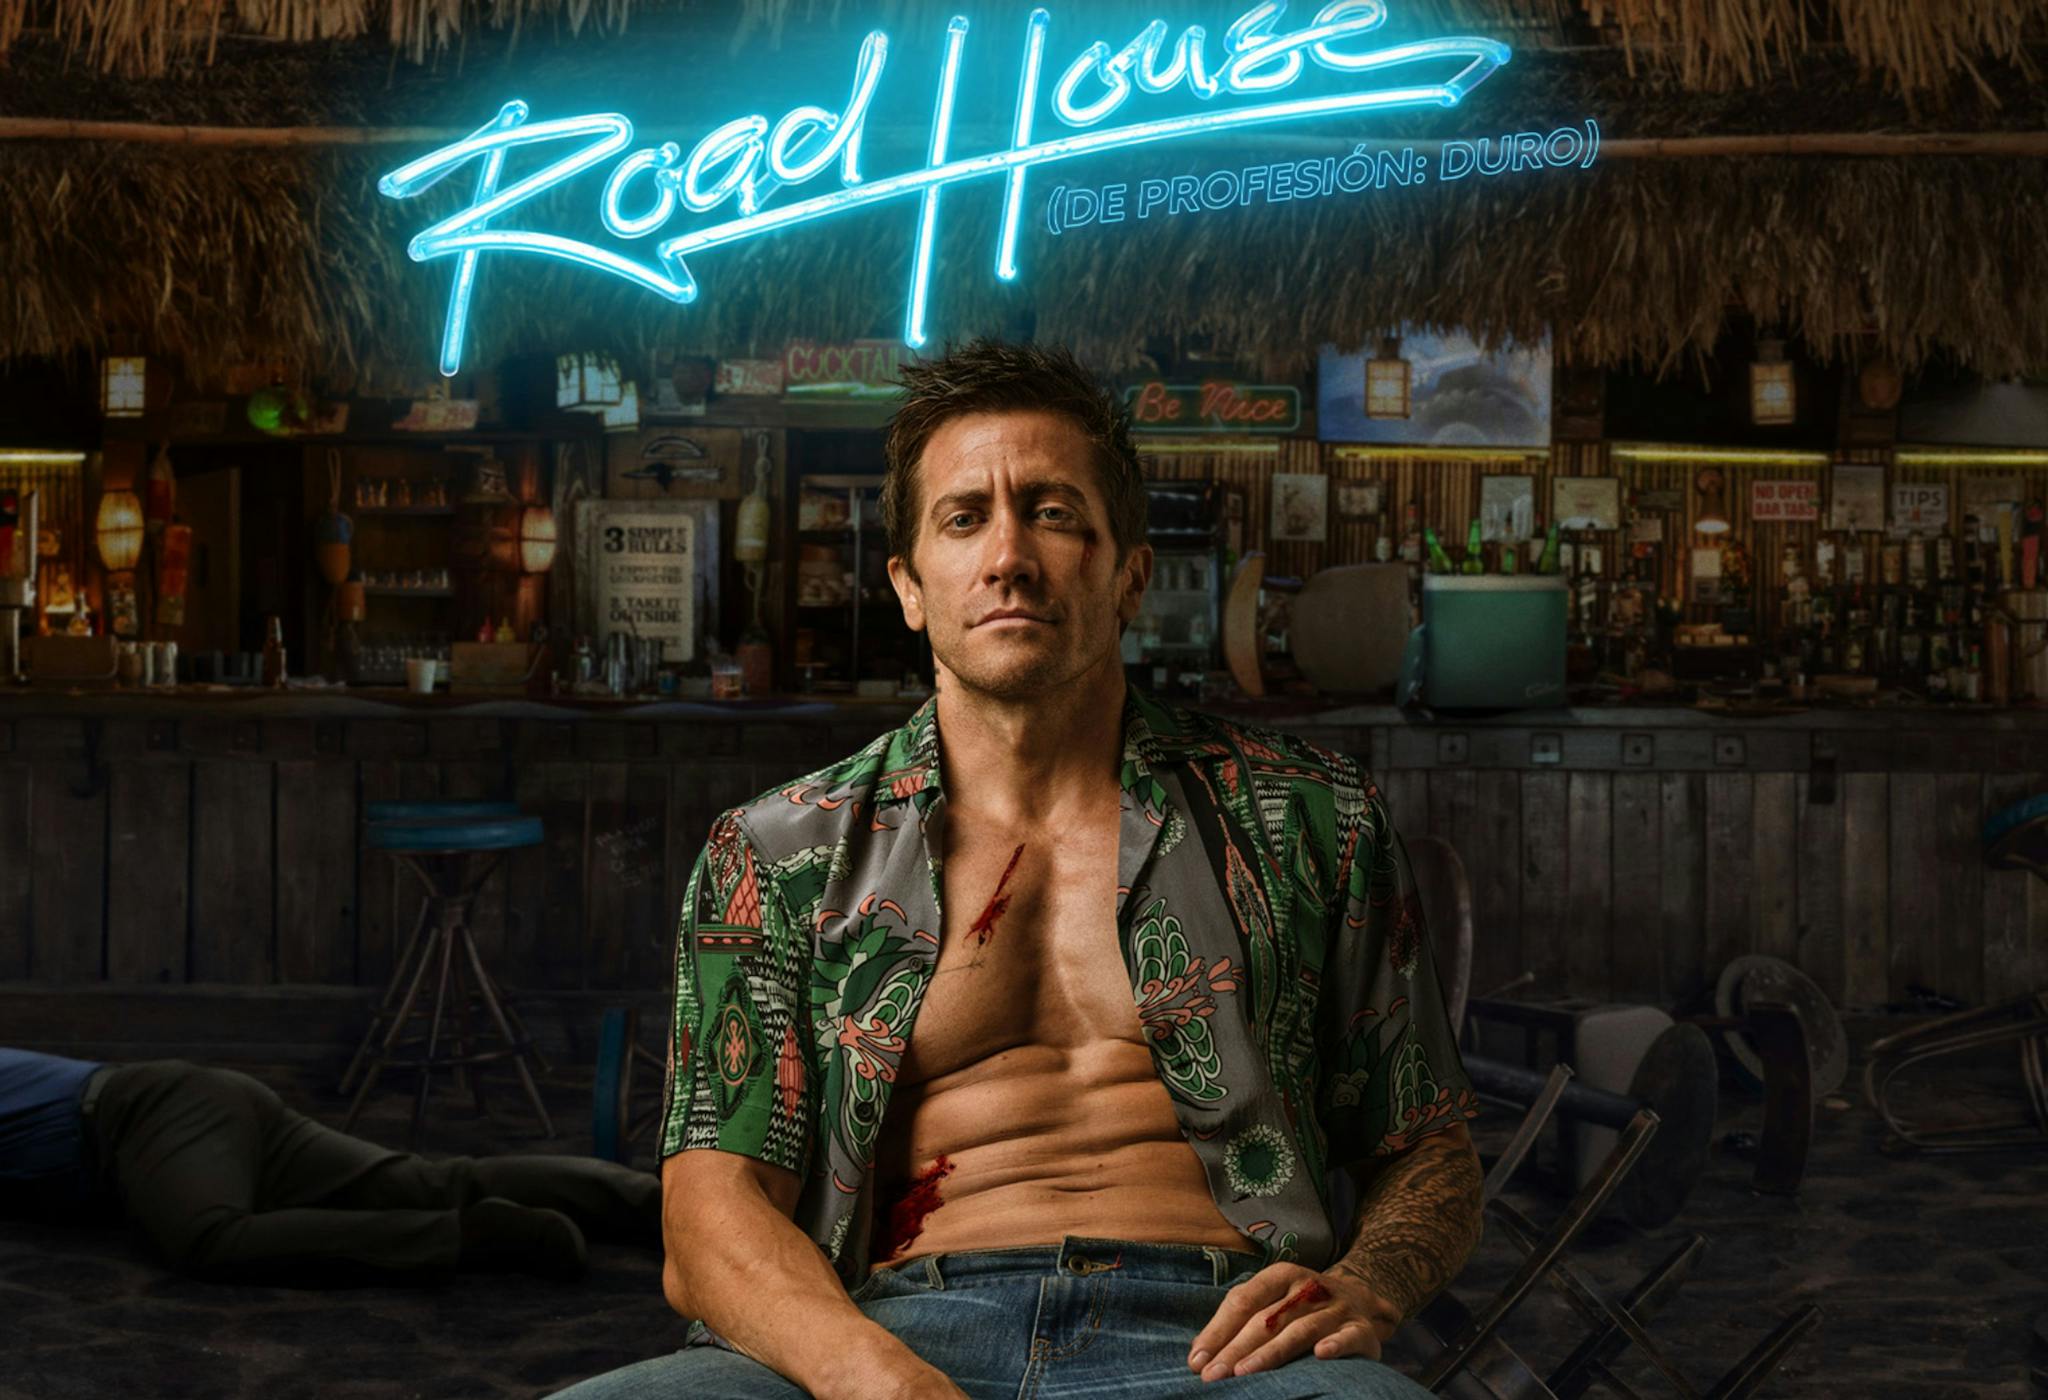 Detalle del cartel promocional de ‘De profesión: duro', protagonizada por Jake Gyllenhaal